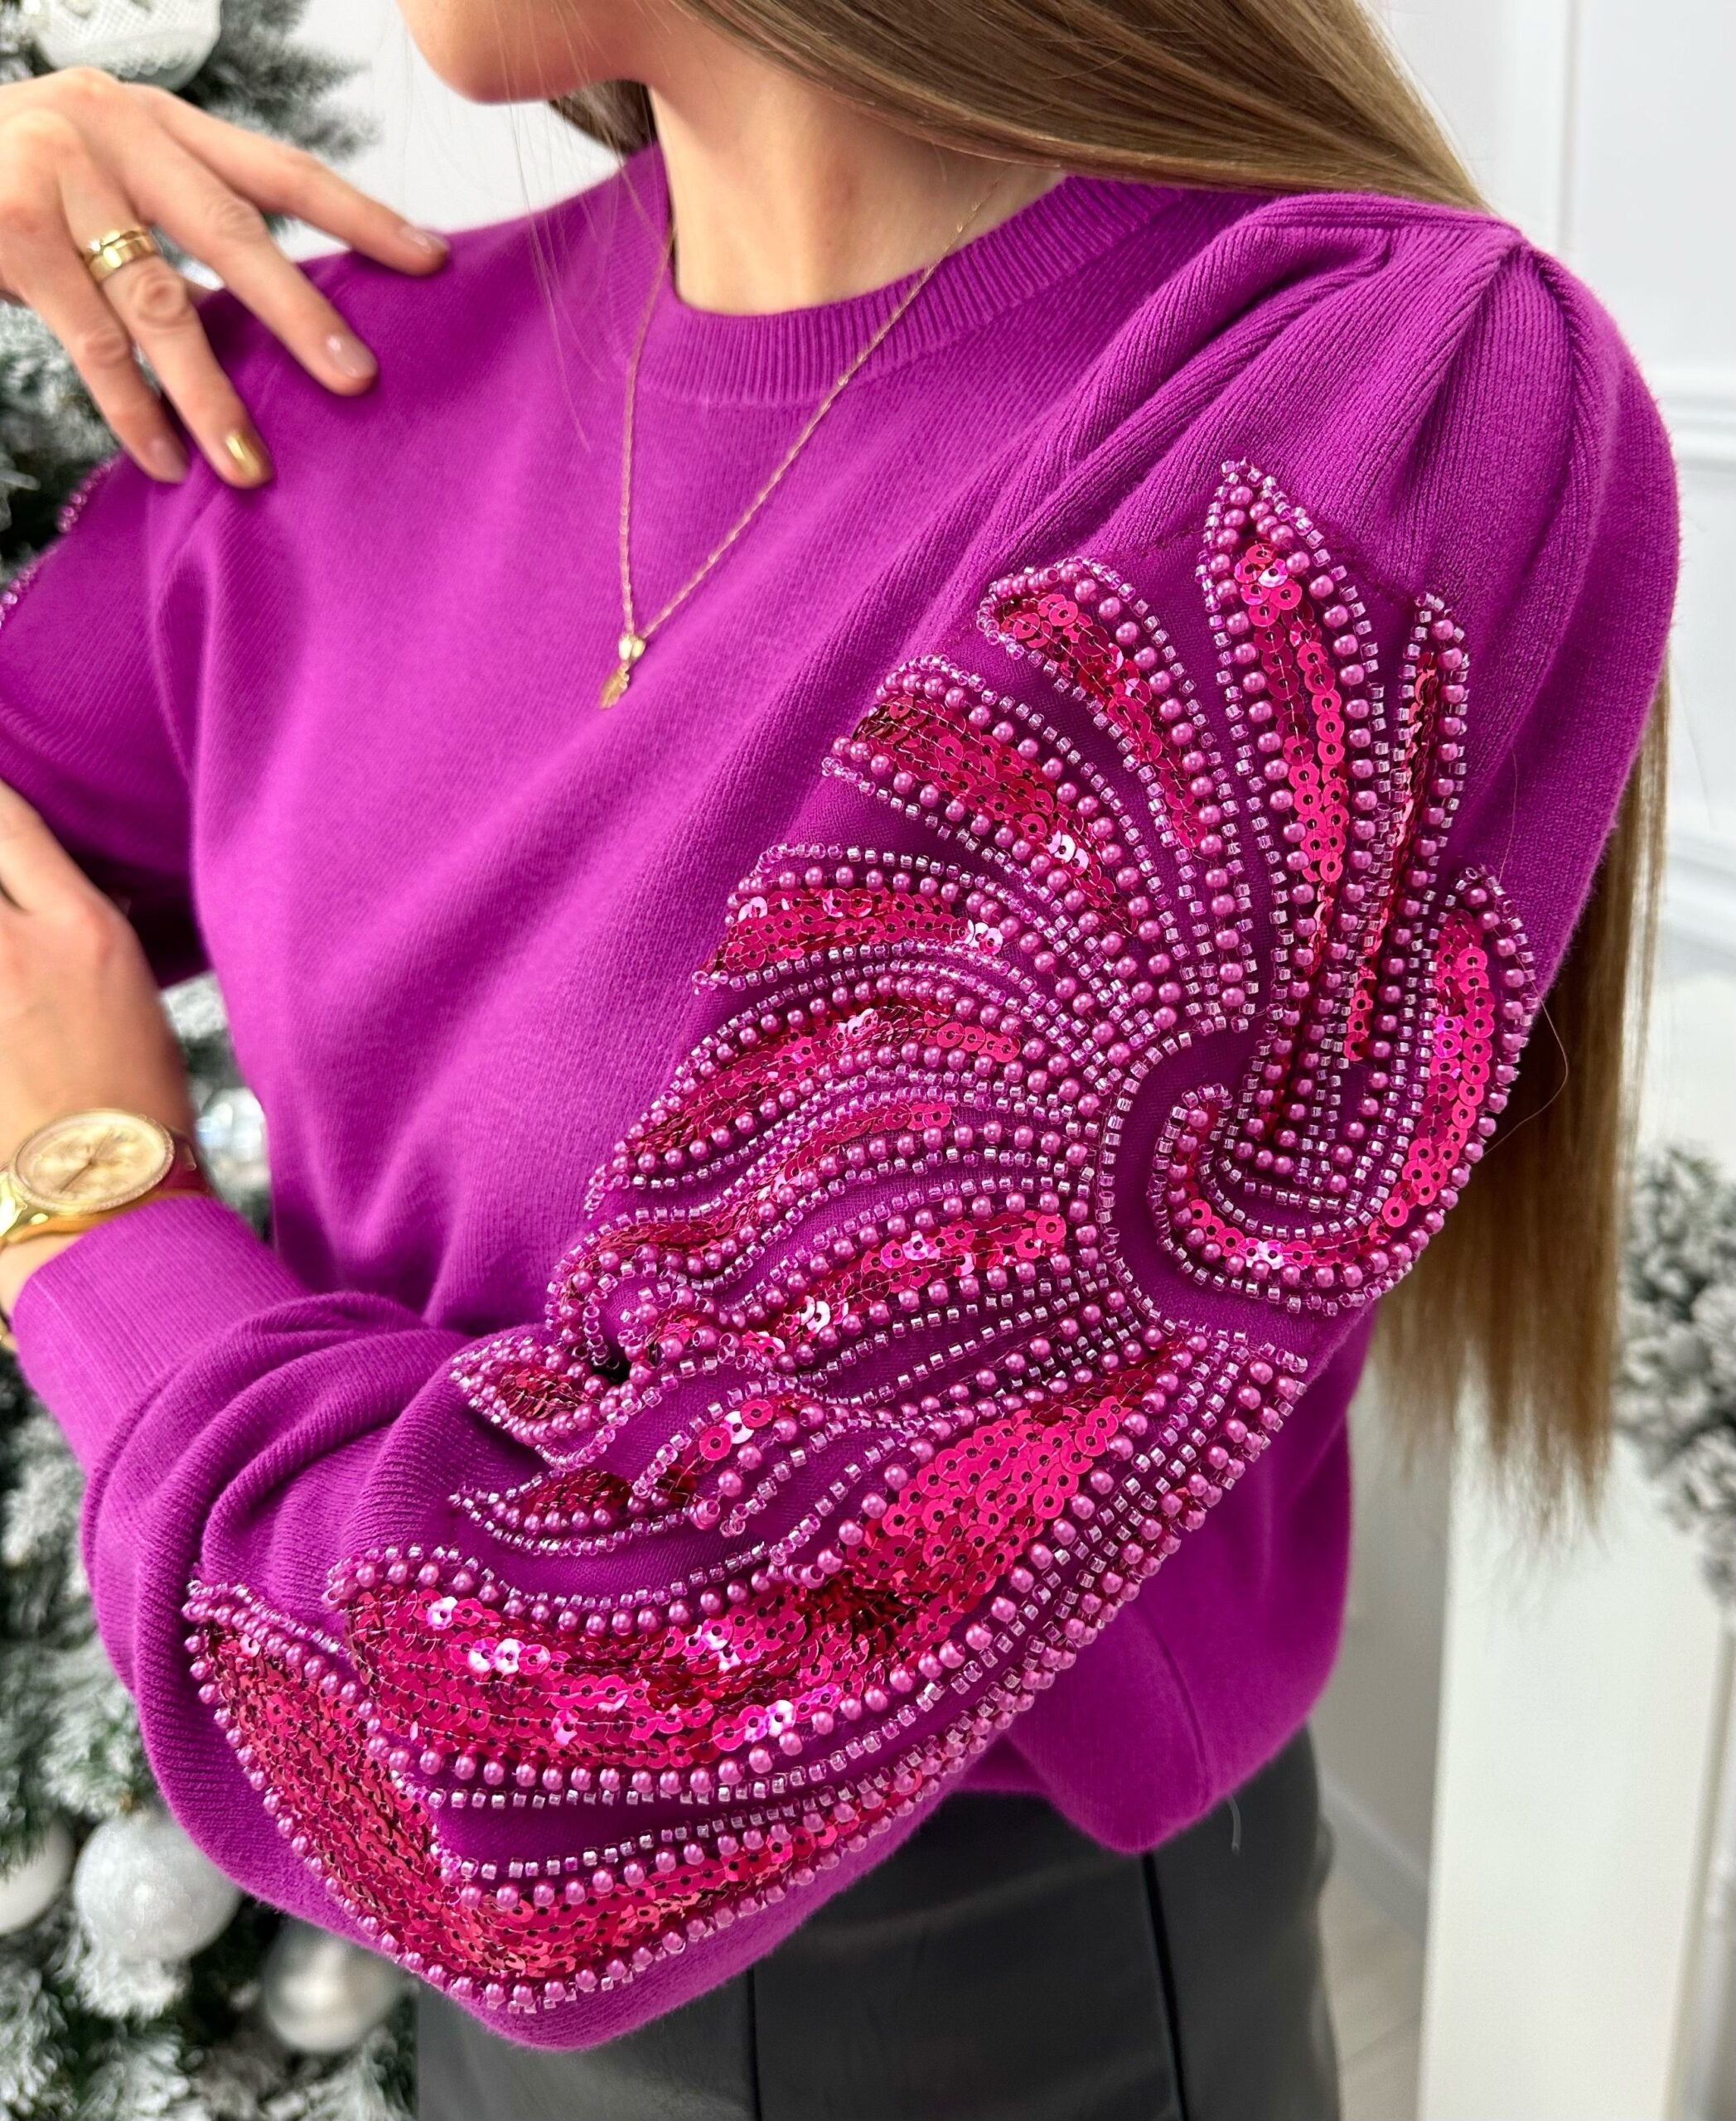 Sweterek Elegant sparkle – śliwka